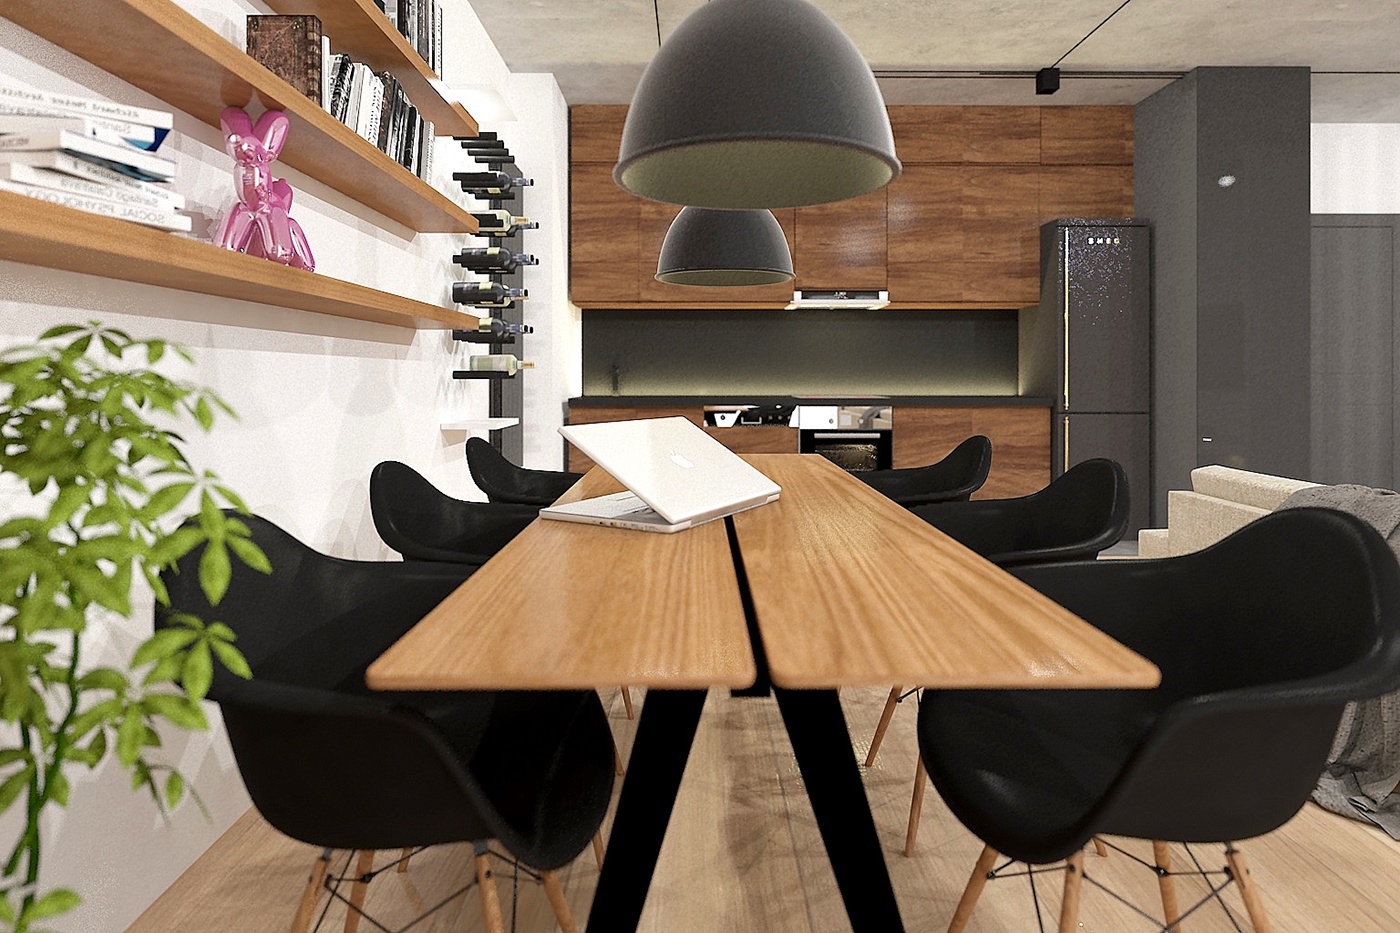 Interior design apartment industrial CGI digital art visualization